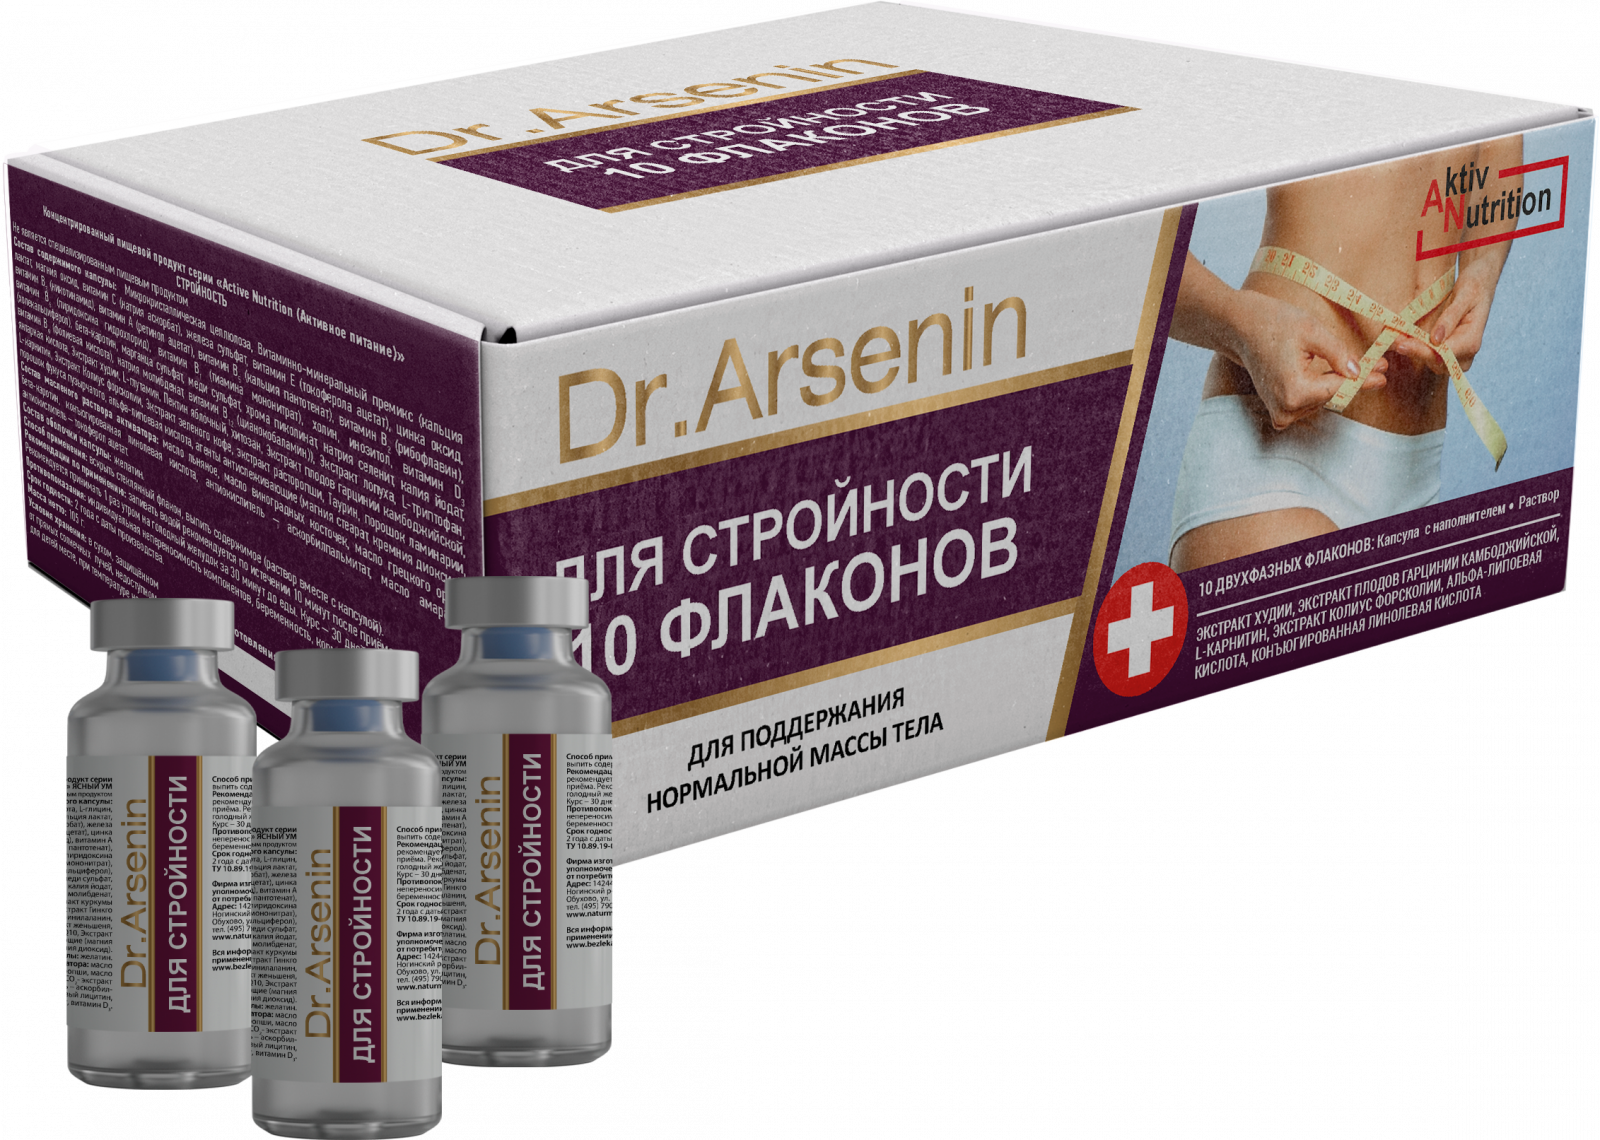  «"Active nutrition" СТРОЙНОСТЬ Dr. Arsenin 10 флаконов» - Снижение веса